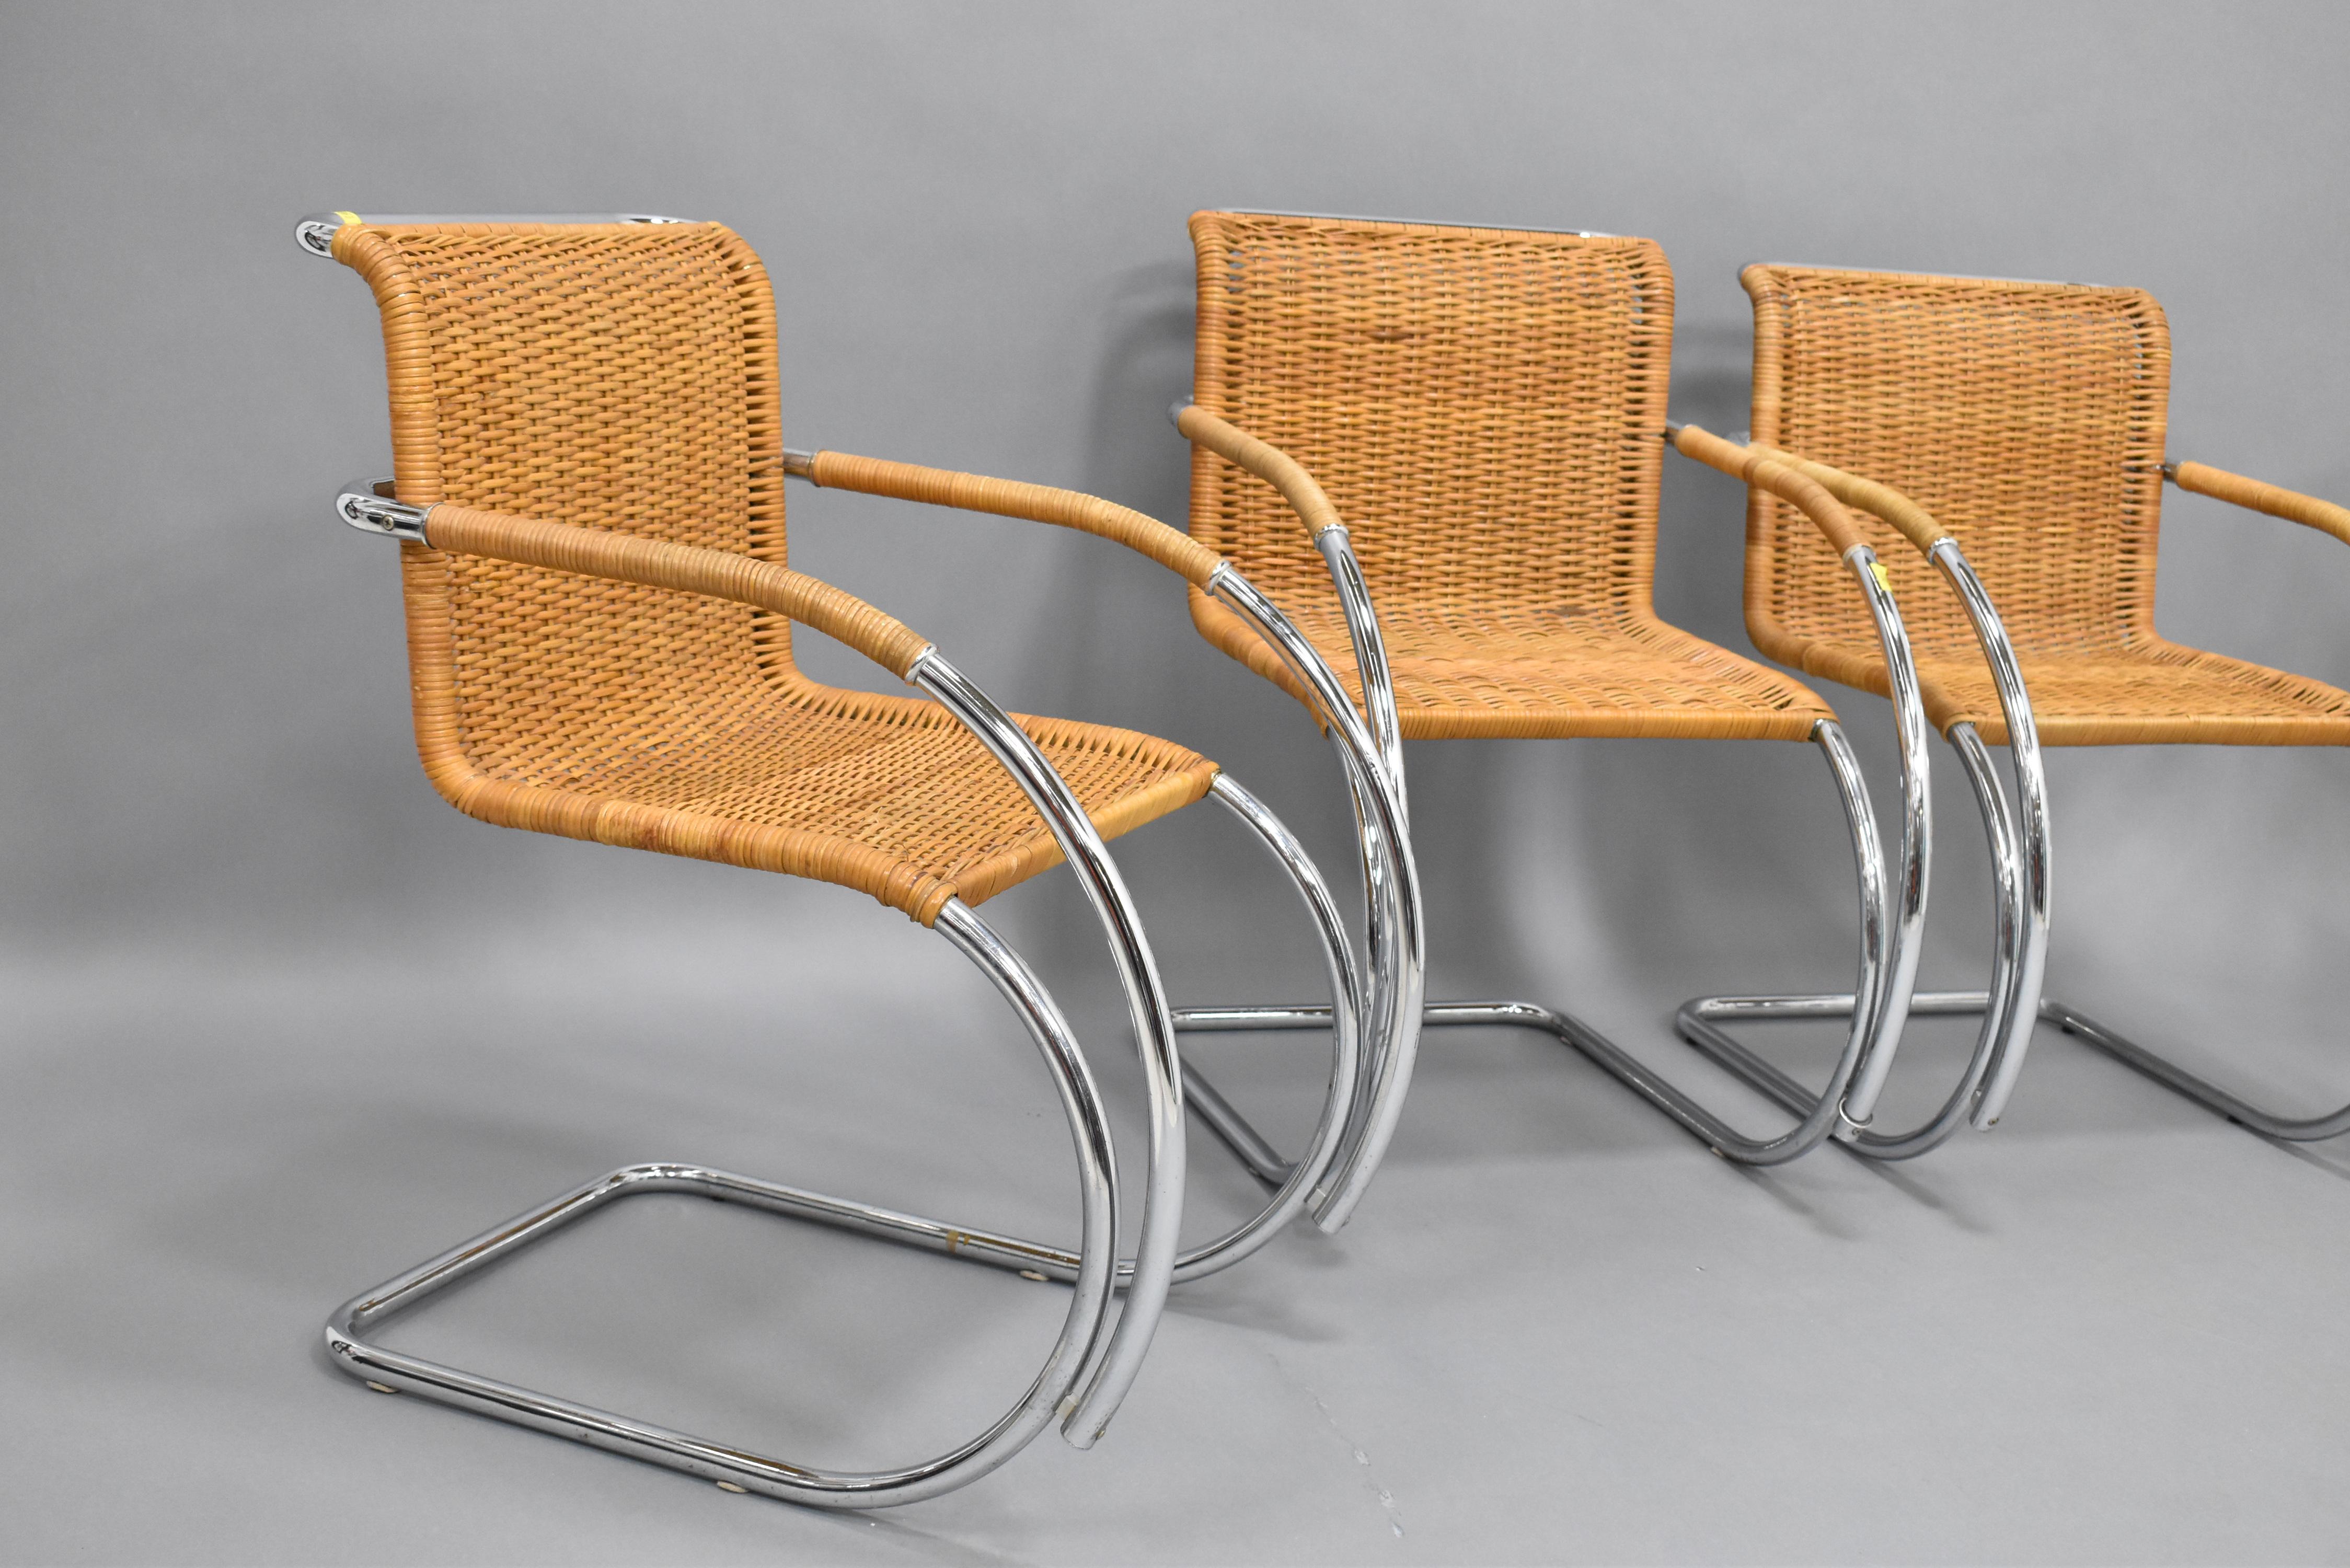 Schöner Satz von (4) Mies Van Der Rohe MR20 Sesseln. Dieses wunderbare und ikonische Stuhlset wurde ursprünglich 1927 von Van Der Rohe entworfen und dürfte in den 60er Jahren hergestellt worden sein. Die Stühle haben eine schöne Sitzfläche und